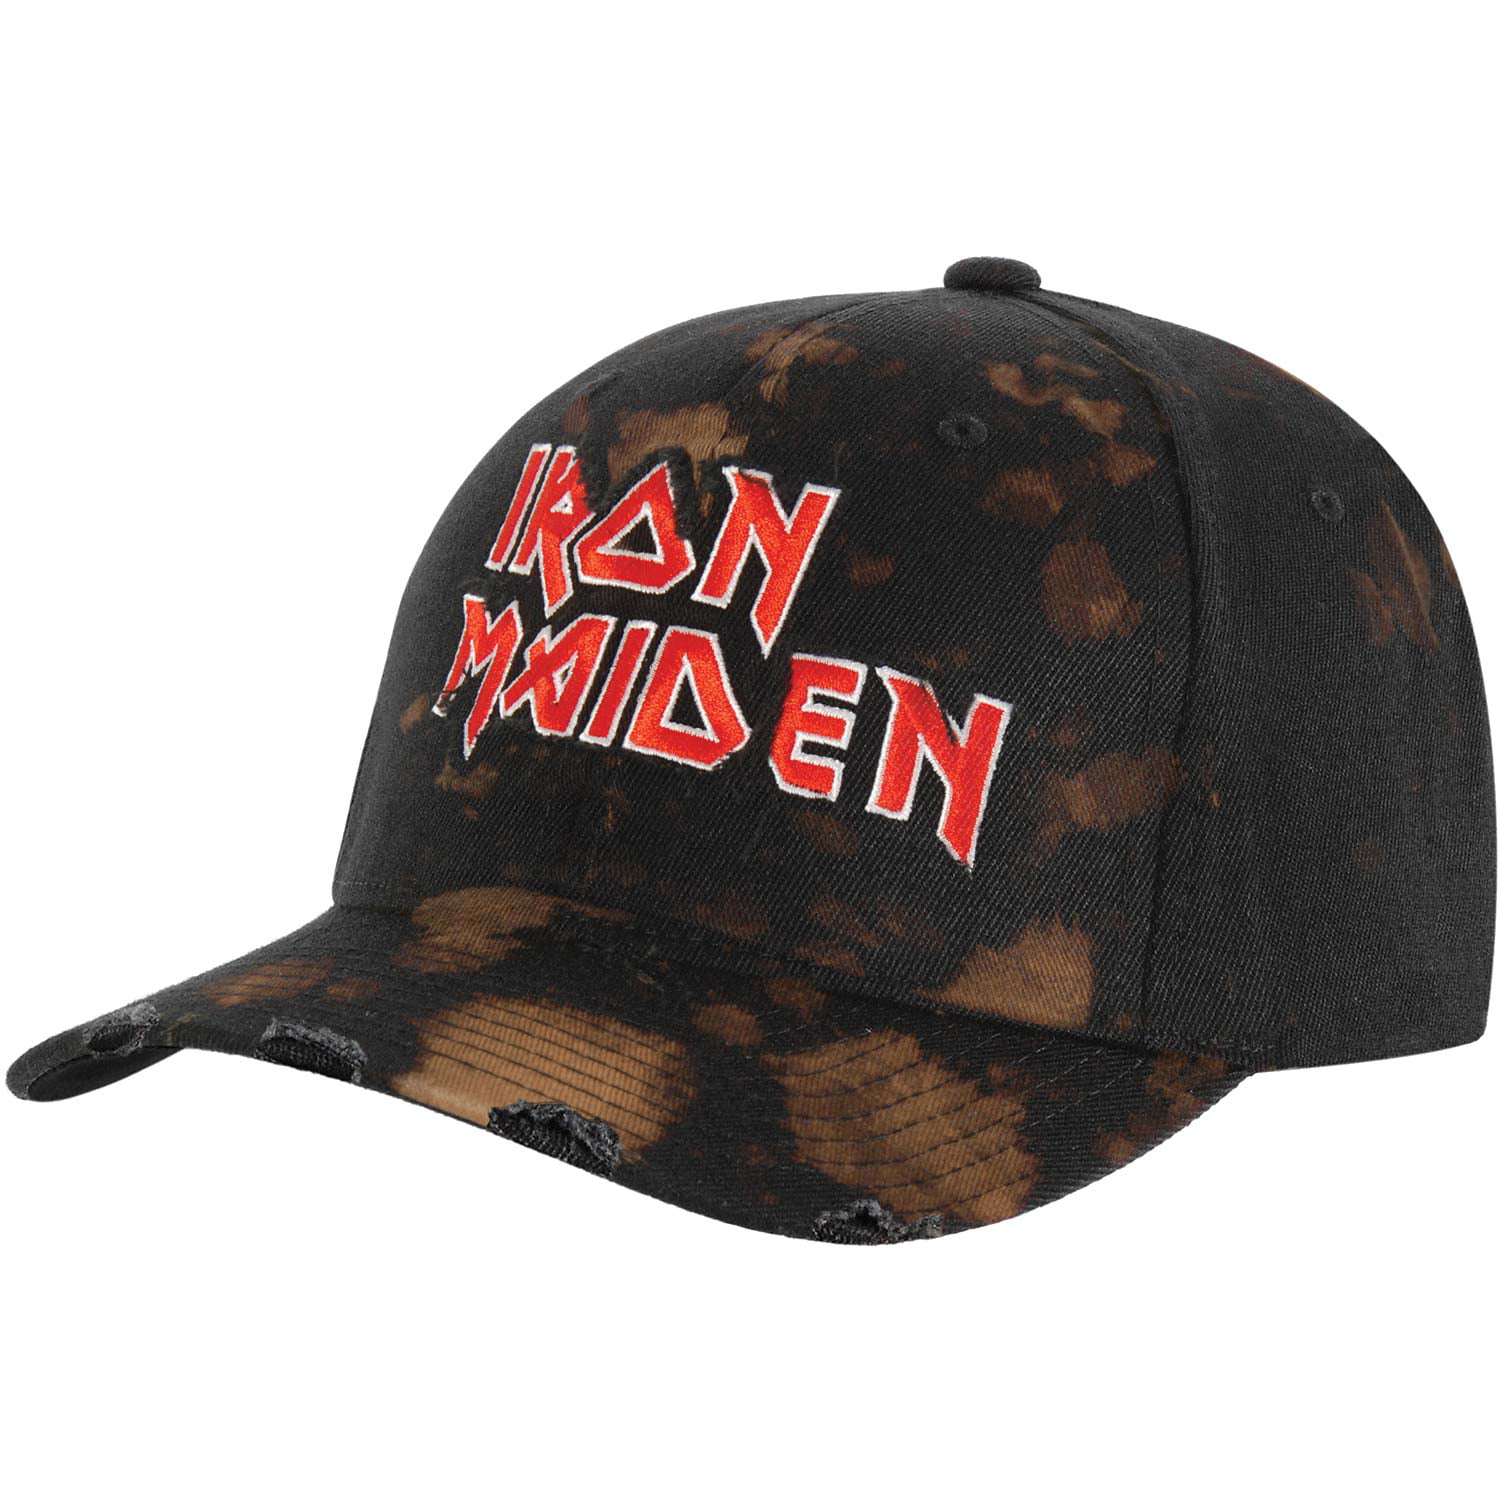 Iron Maiden - Iron Maiden Men's Baseball Cap Adjustable Black - Walmart